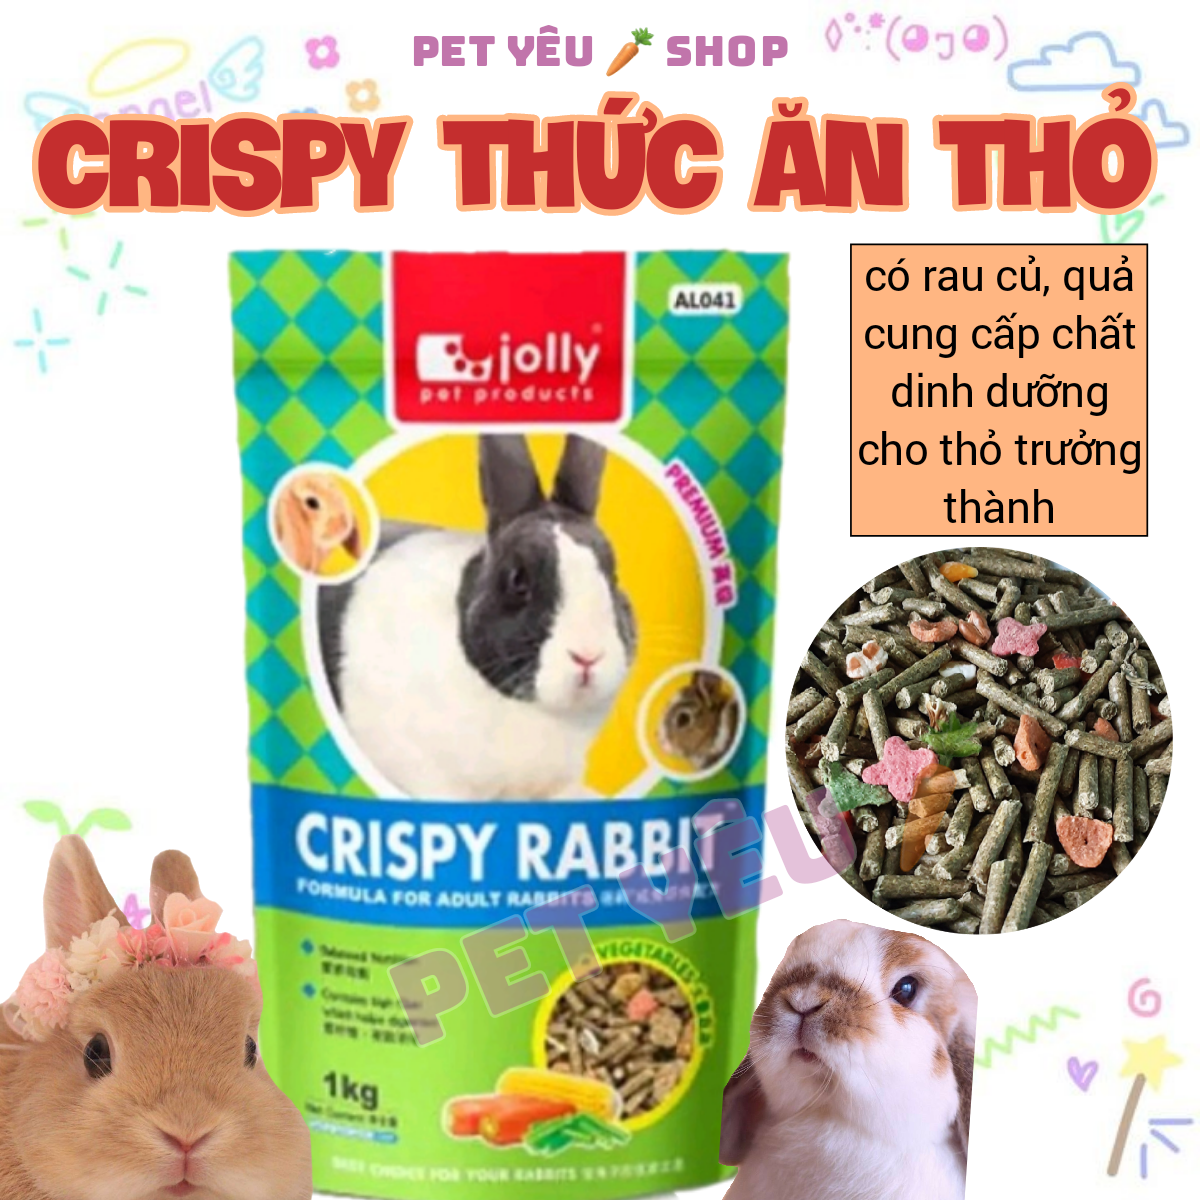 Crispy 1KG Date mới Freeship thức ăn thỏ trưởng thành siêu thơm siêu ngon